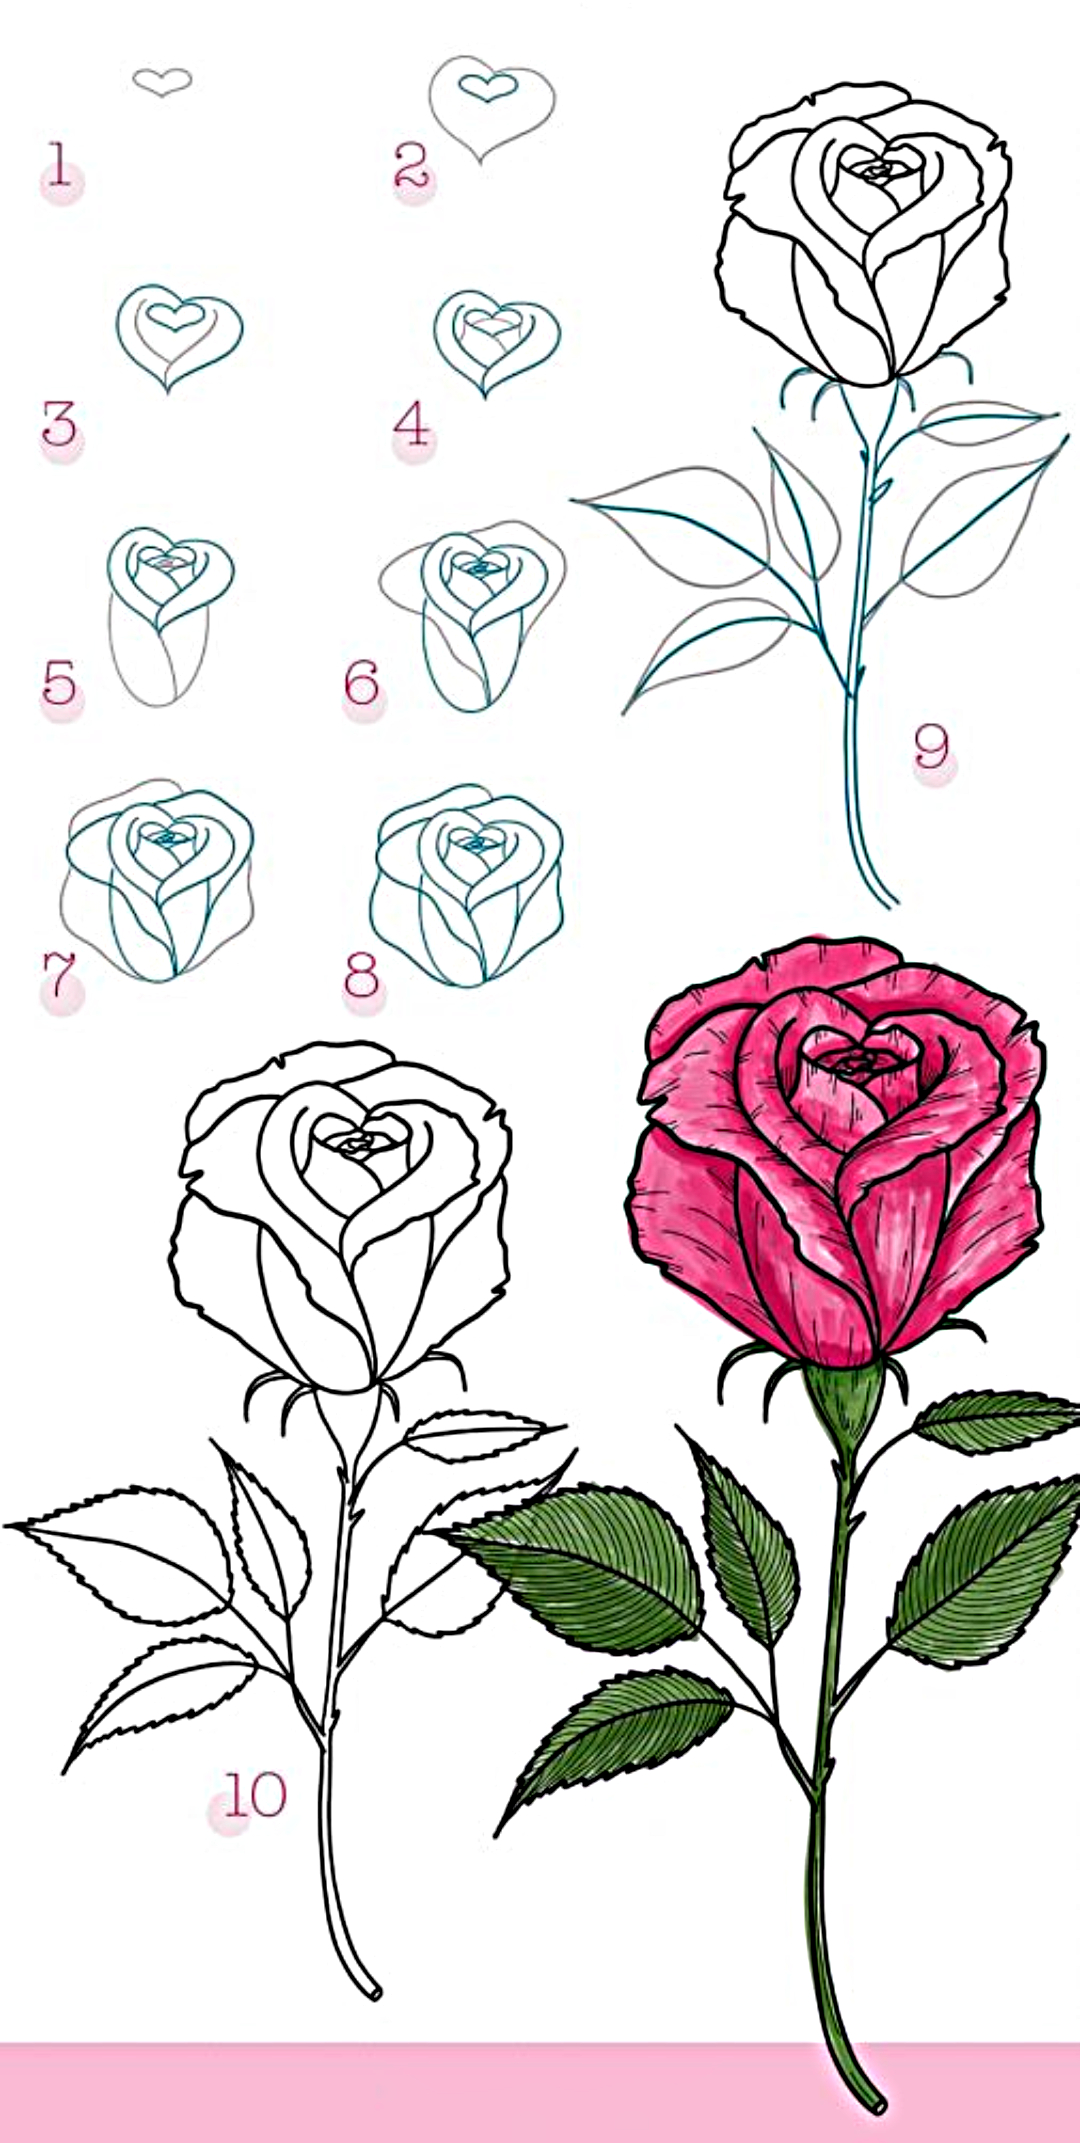 Top 7 vẽ hoa đơn giản mà đẹp mang lại cảm hứng cho bạn